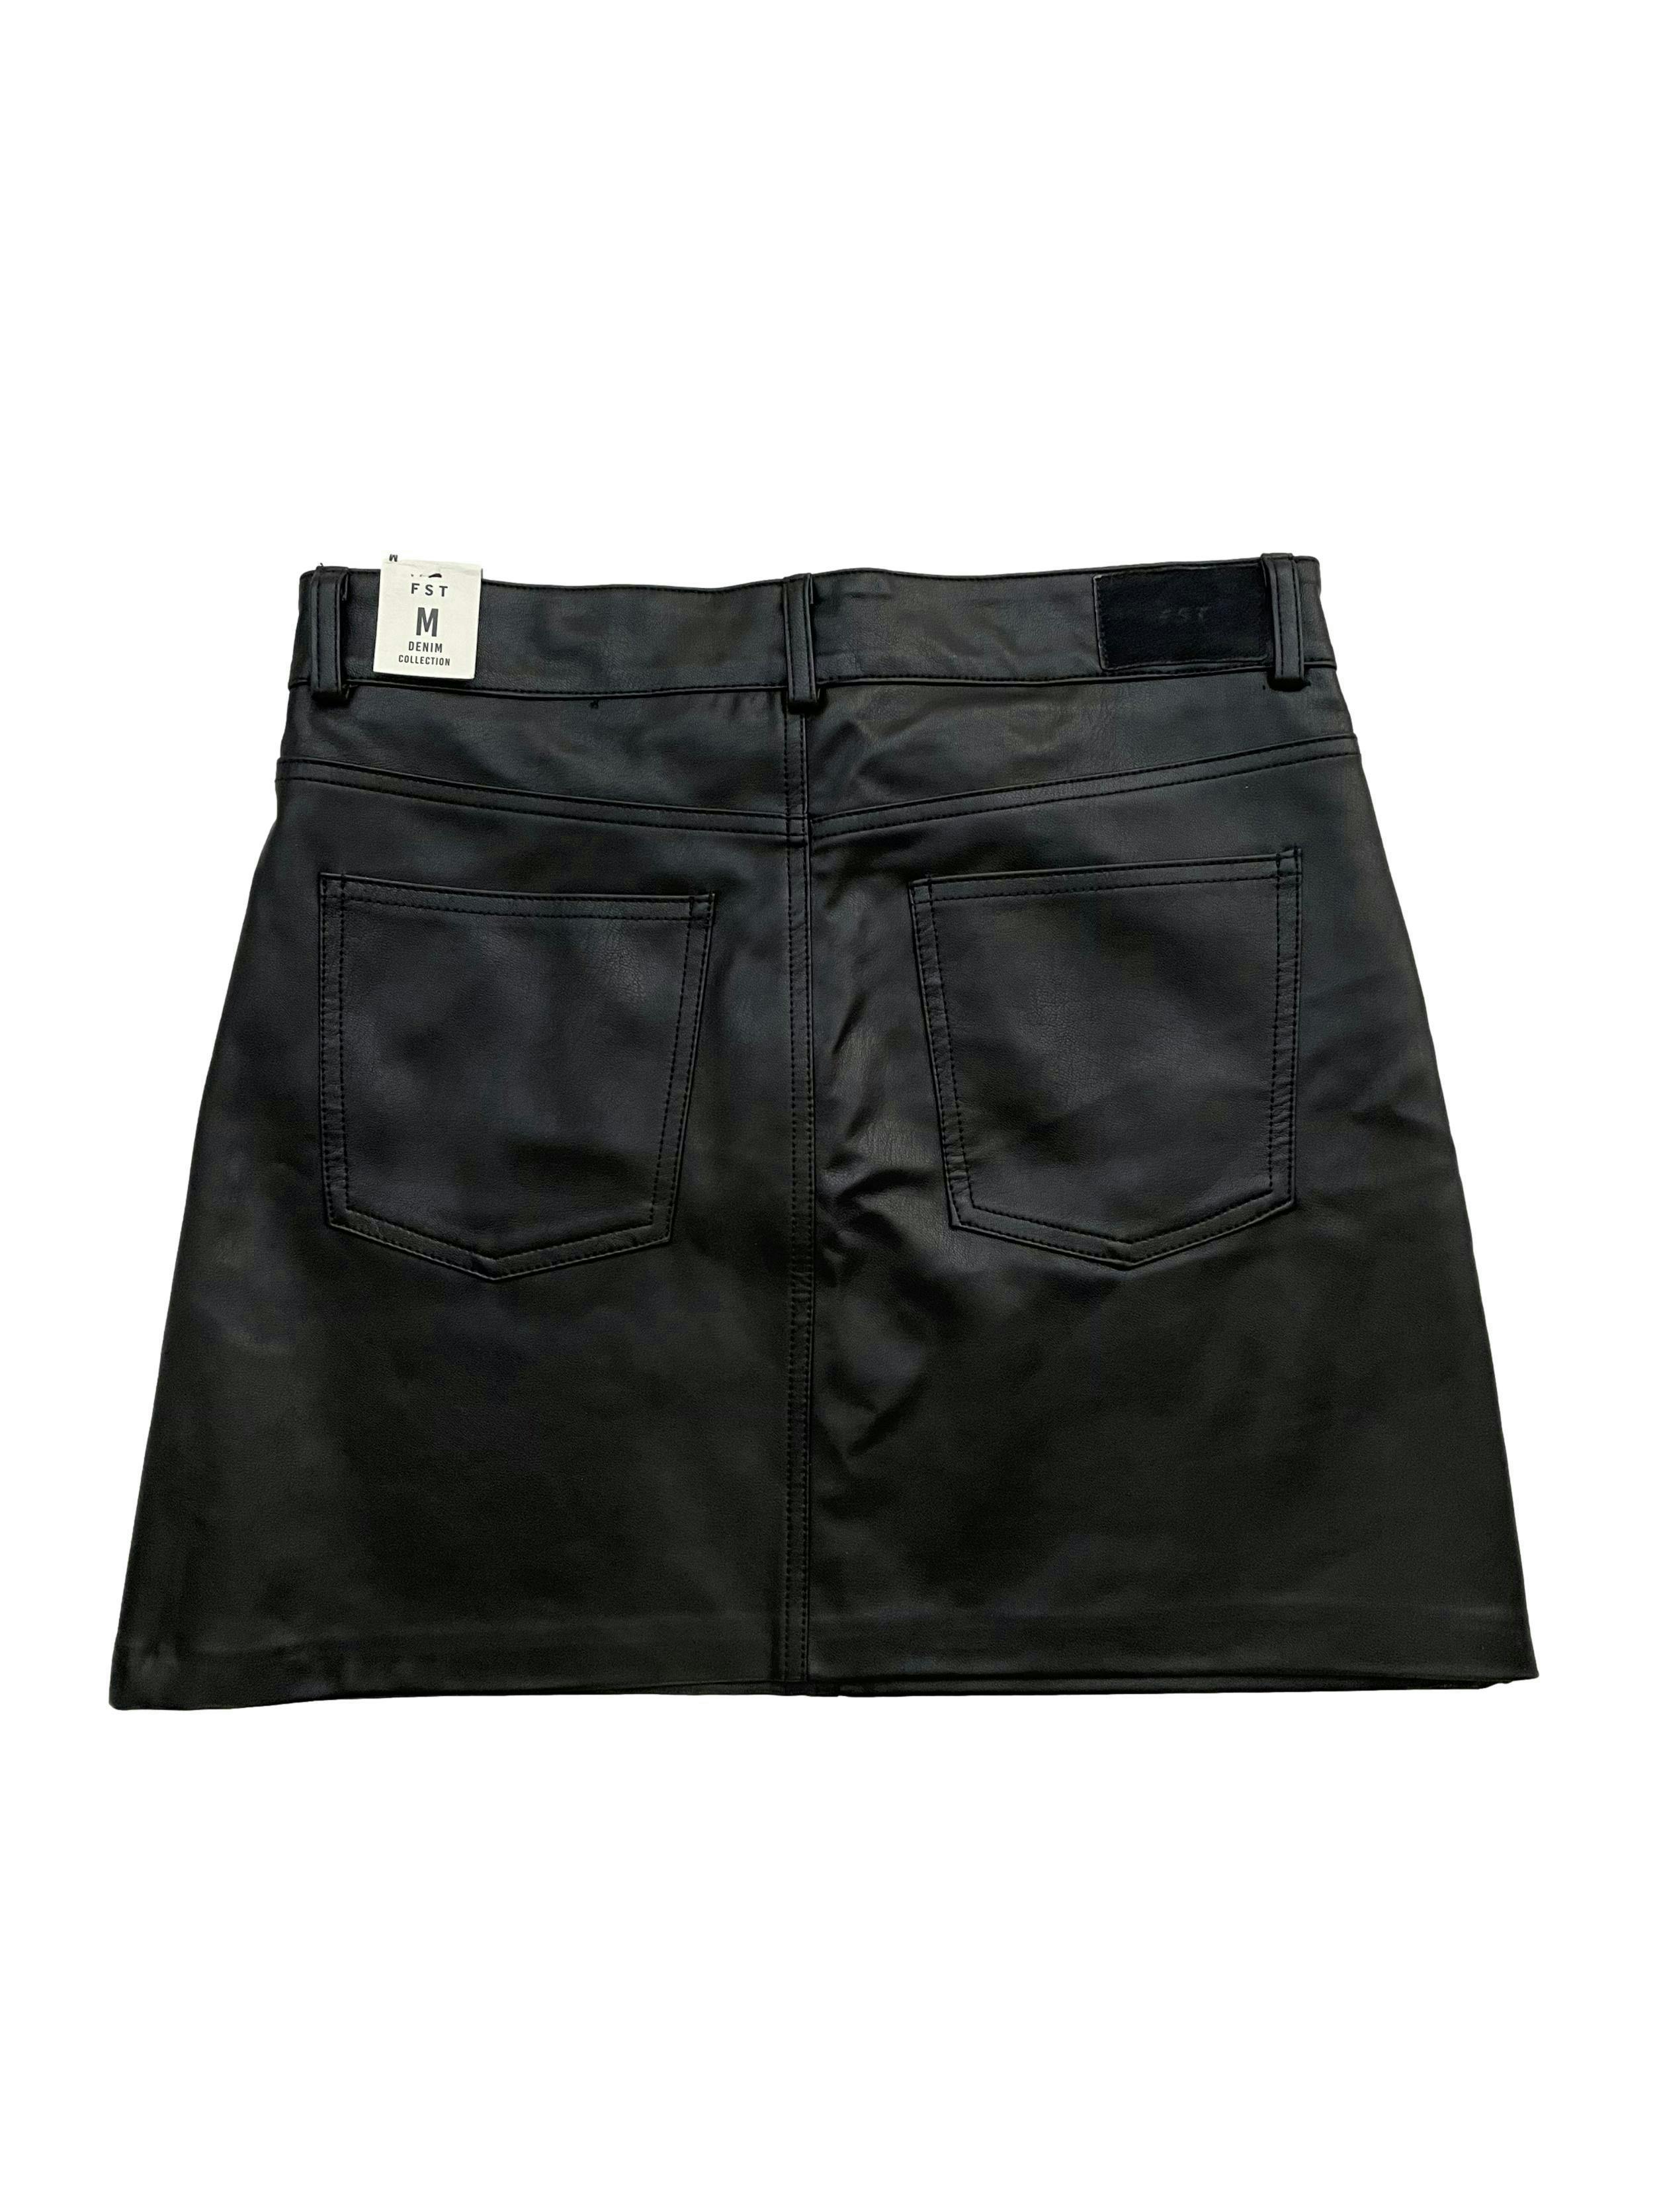 Falda negra de cuerina con forro de algodón , bolsillos en delantero y espalda , cierre y botón frontal. Cintura 76 cm , Largo 40 cm.